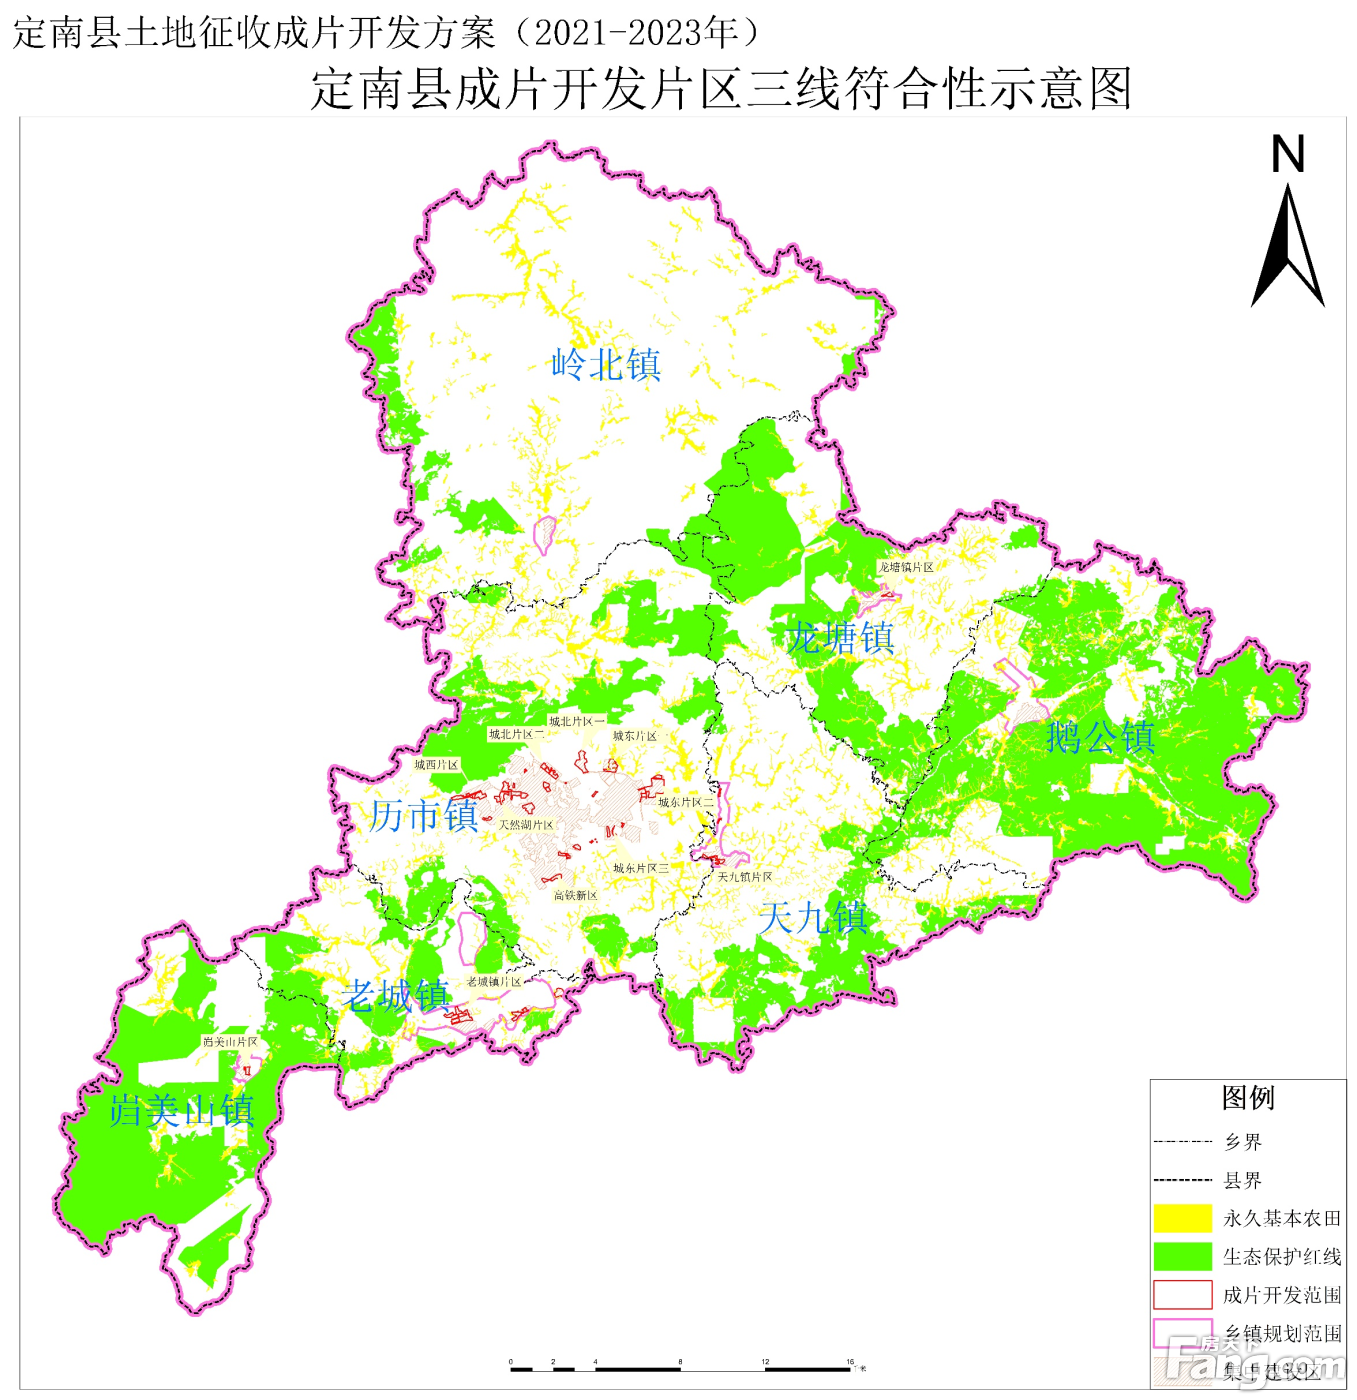 定南县土地征收成片开发方案符合国民经济和社会发展规划,承诺并保证